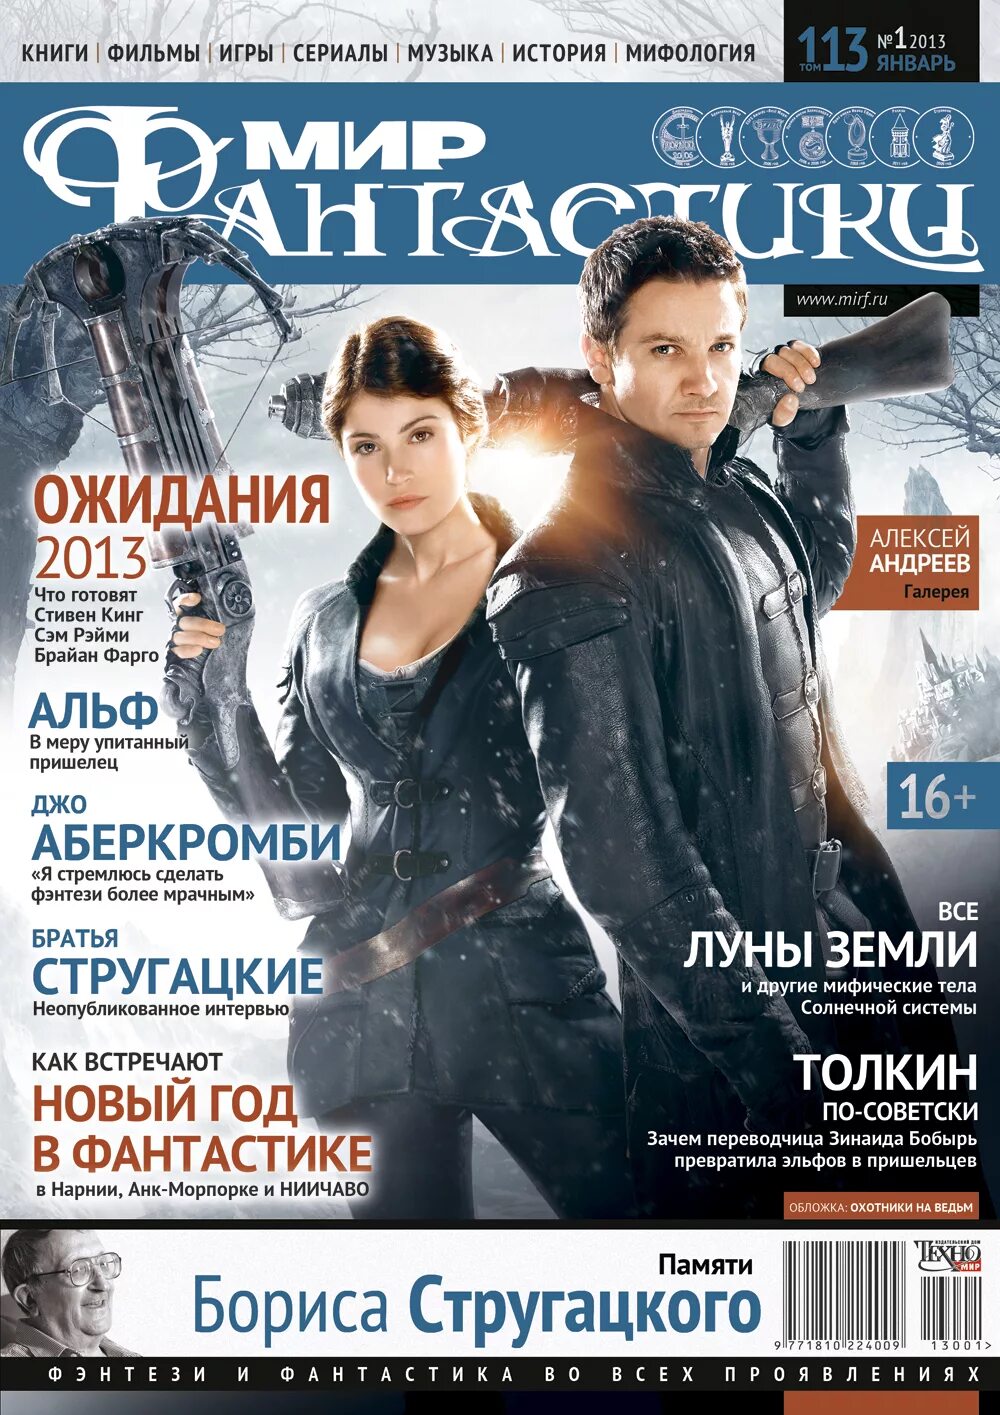 Первый журнал в мире. Мир фантастики. Мир фантастики книги. Мир фантастики журнал январь 2013. Мир фантастики журнал.